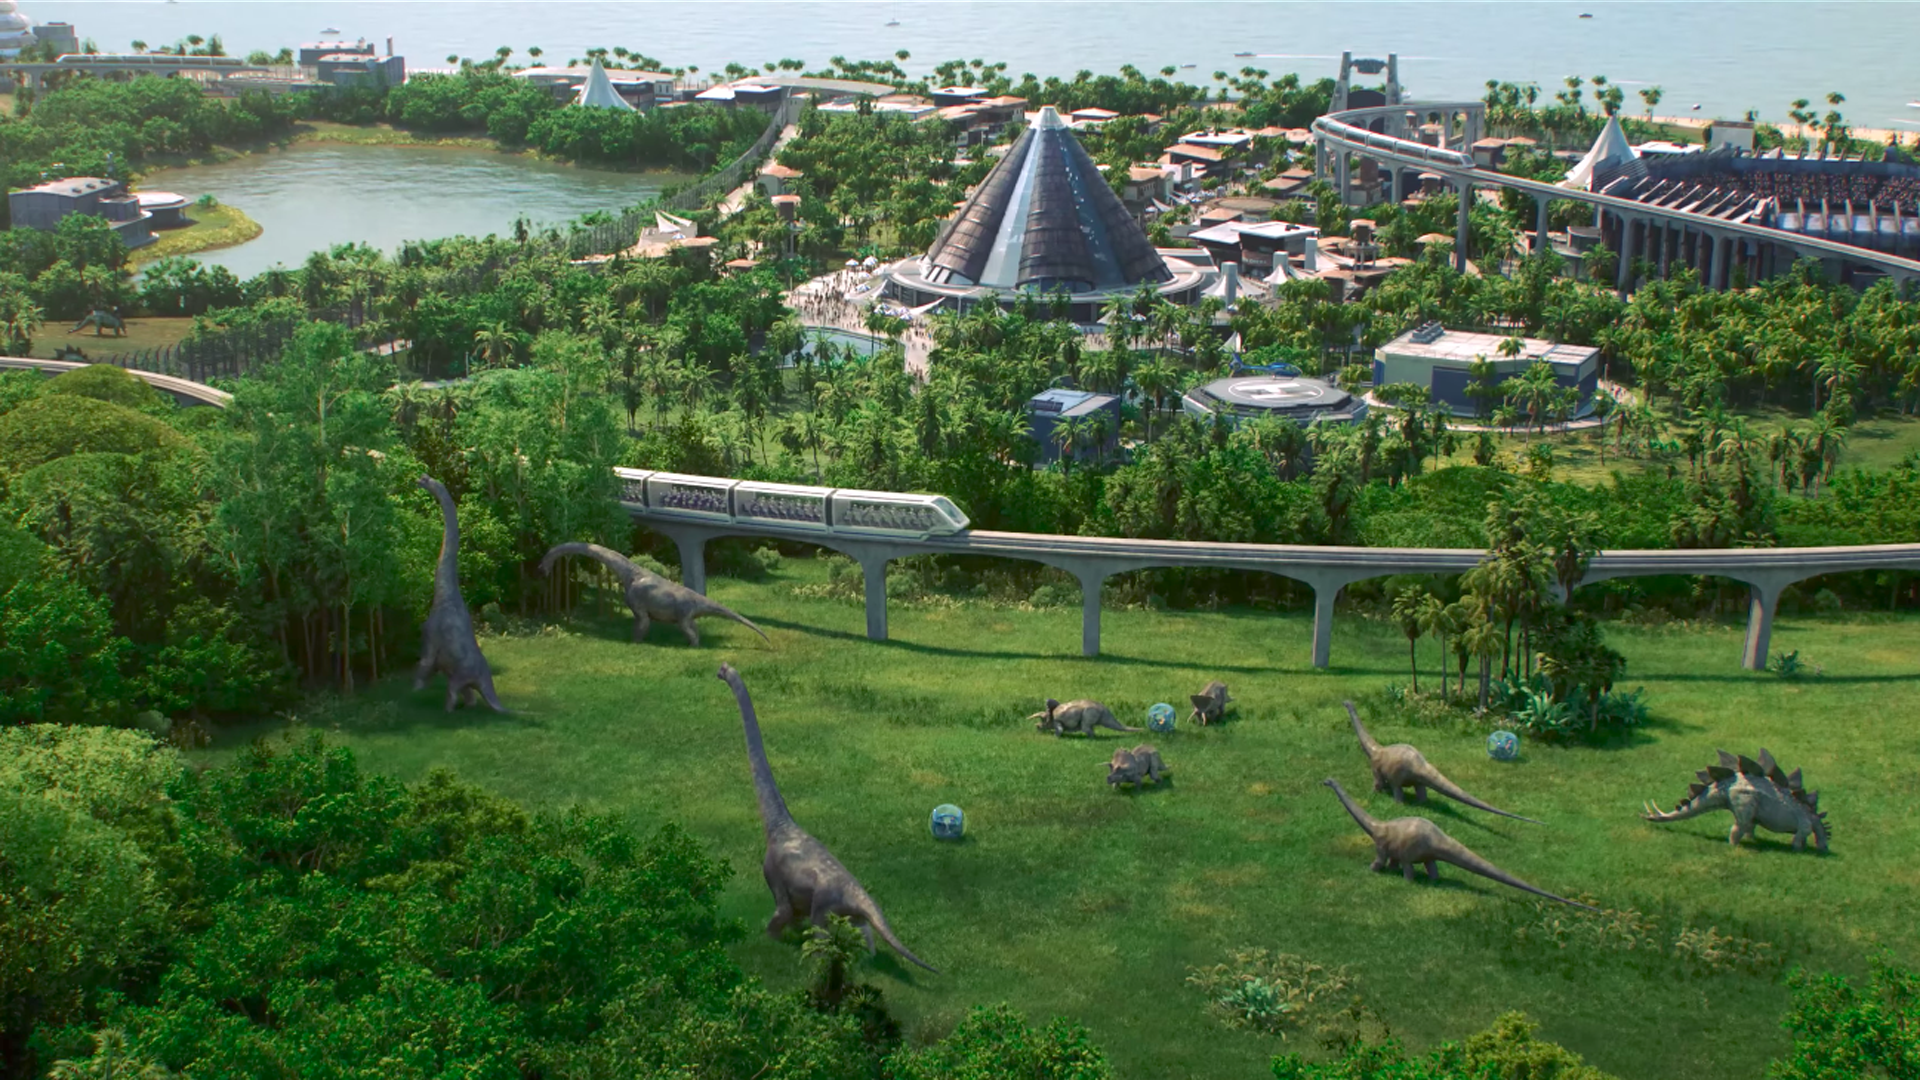 Em jogo de “Jurassic World”, administre um parque de dinos